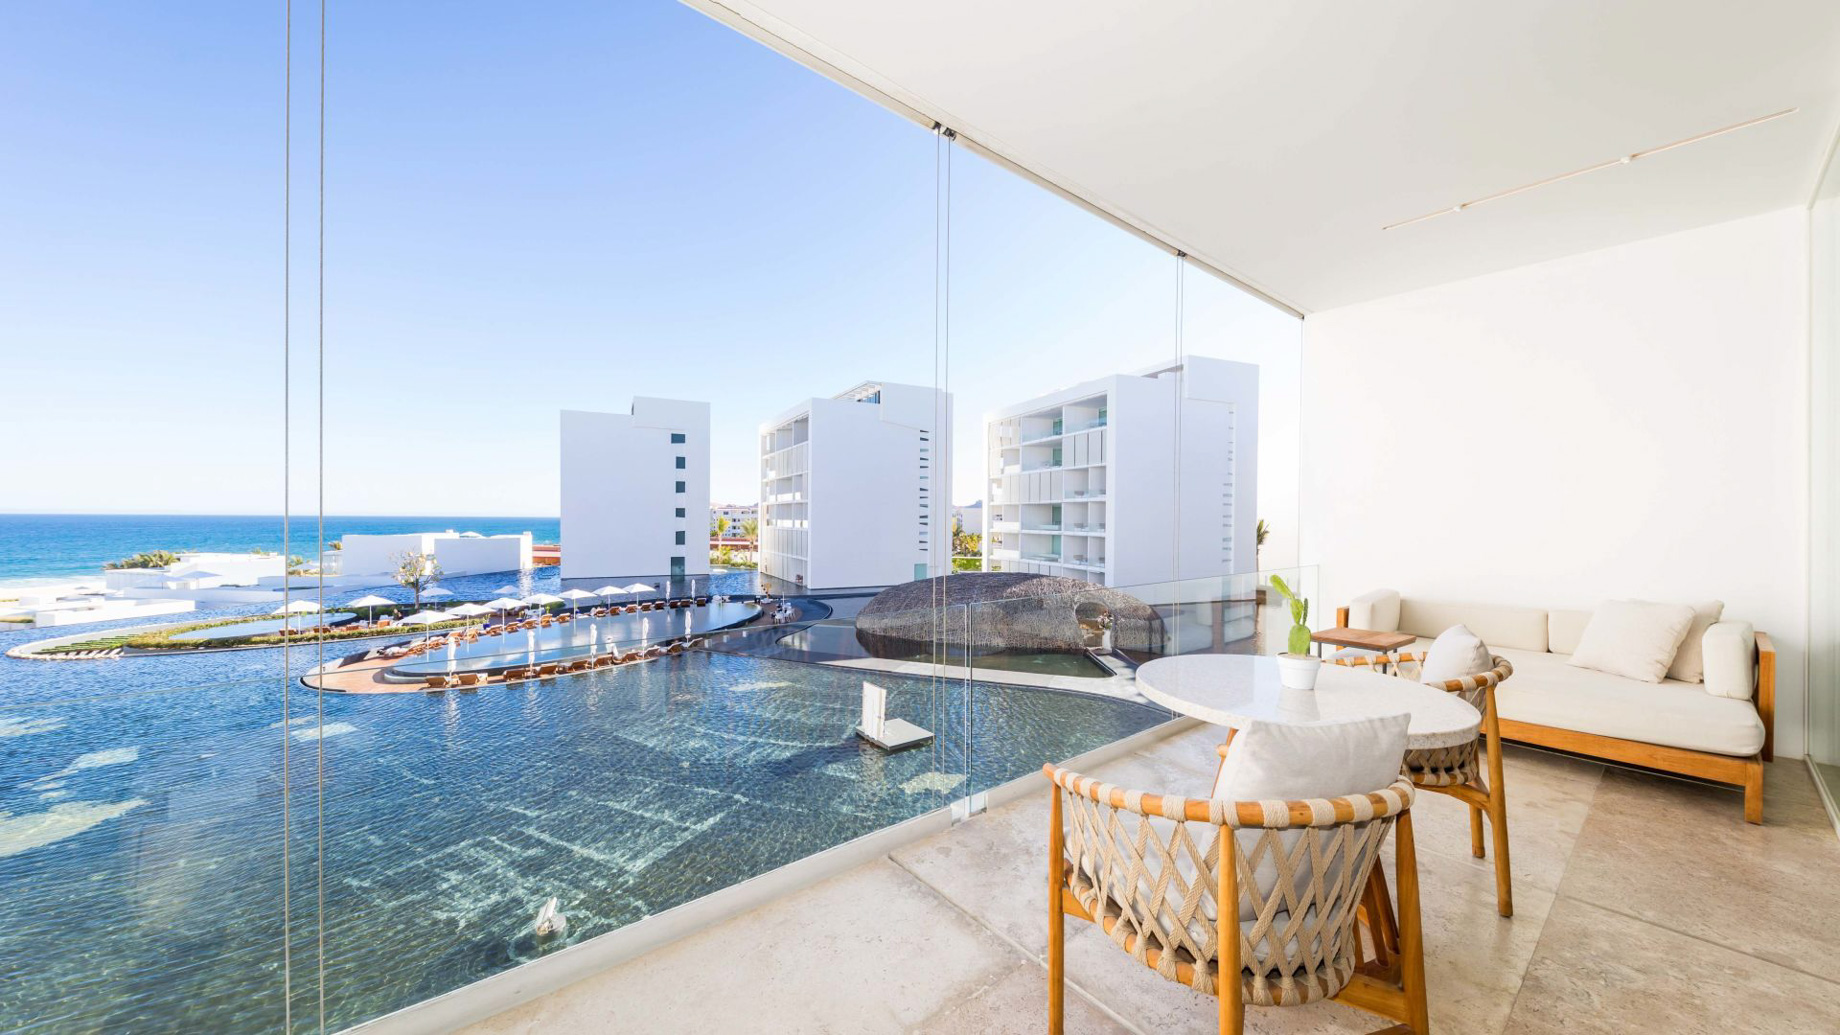 Viceroy Los Cabos Resort – San José del Cabo, Mexico – Ocean View One Bedroom Suite Balcony View